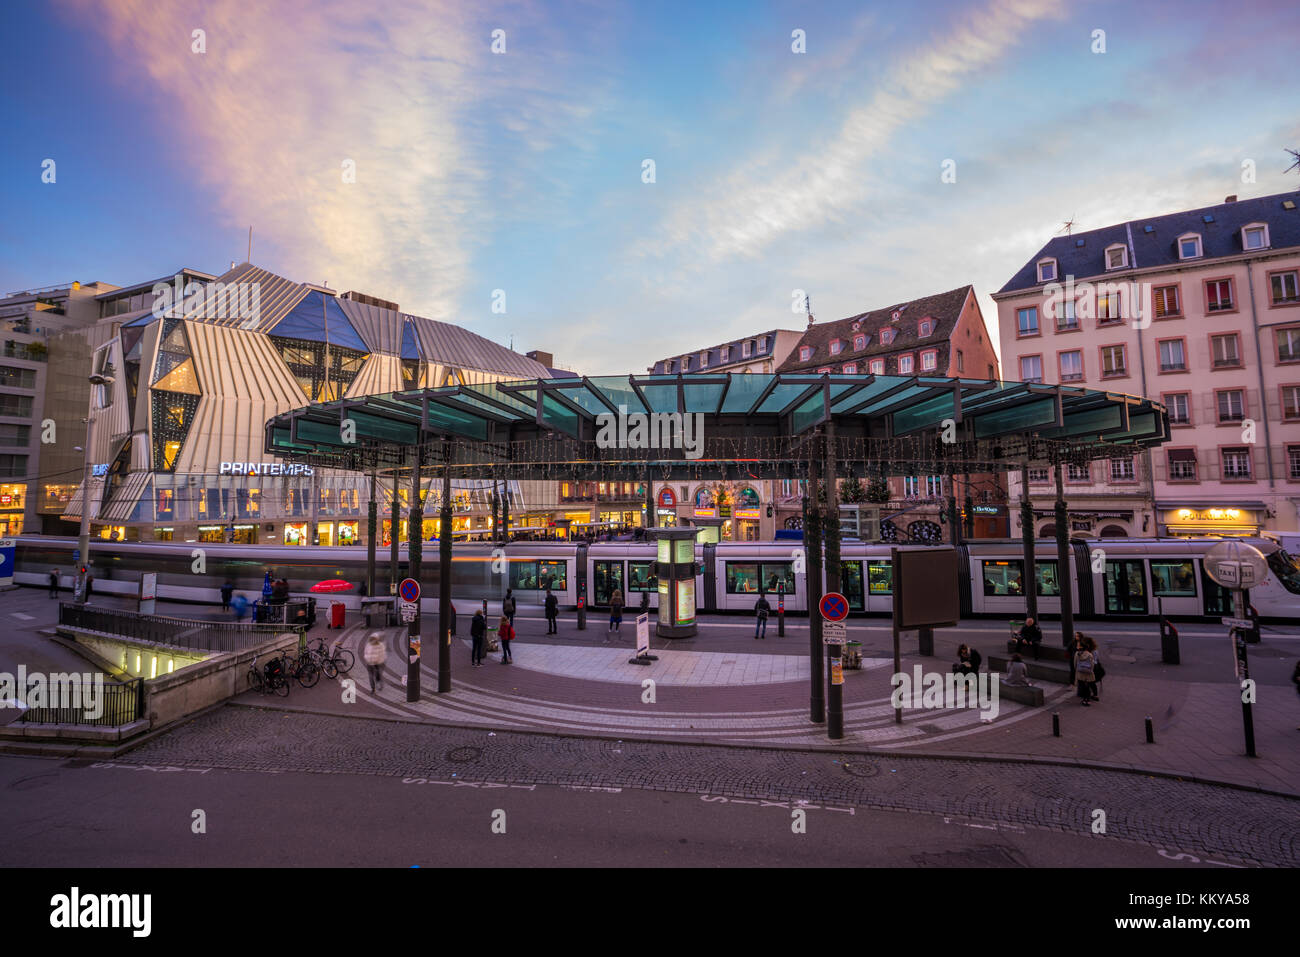 Straßburg, Frankreich - 23 November 2017: geschäftigen Zentrum der französischen Stadt Straßburg Elsass mit Straßenbahn und viele Pendler Fußgänger zu Fuß unte Stockfoto